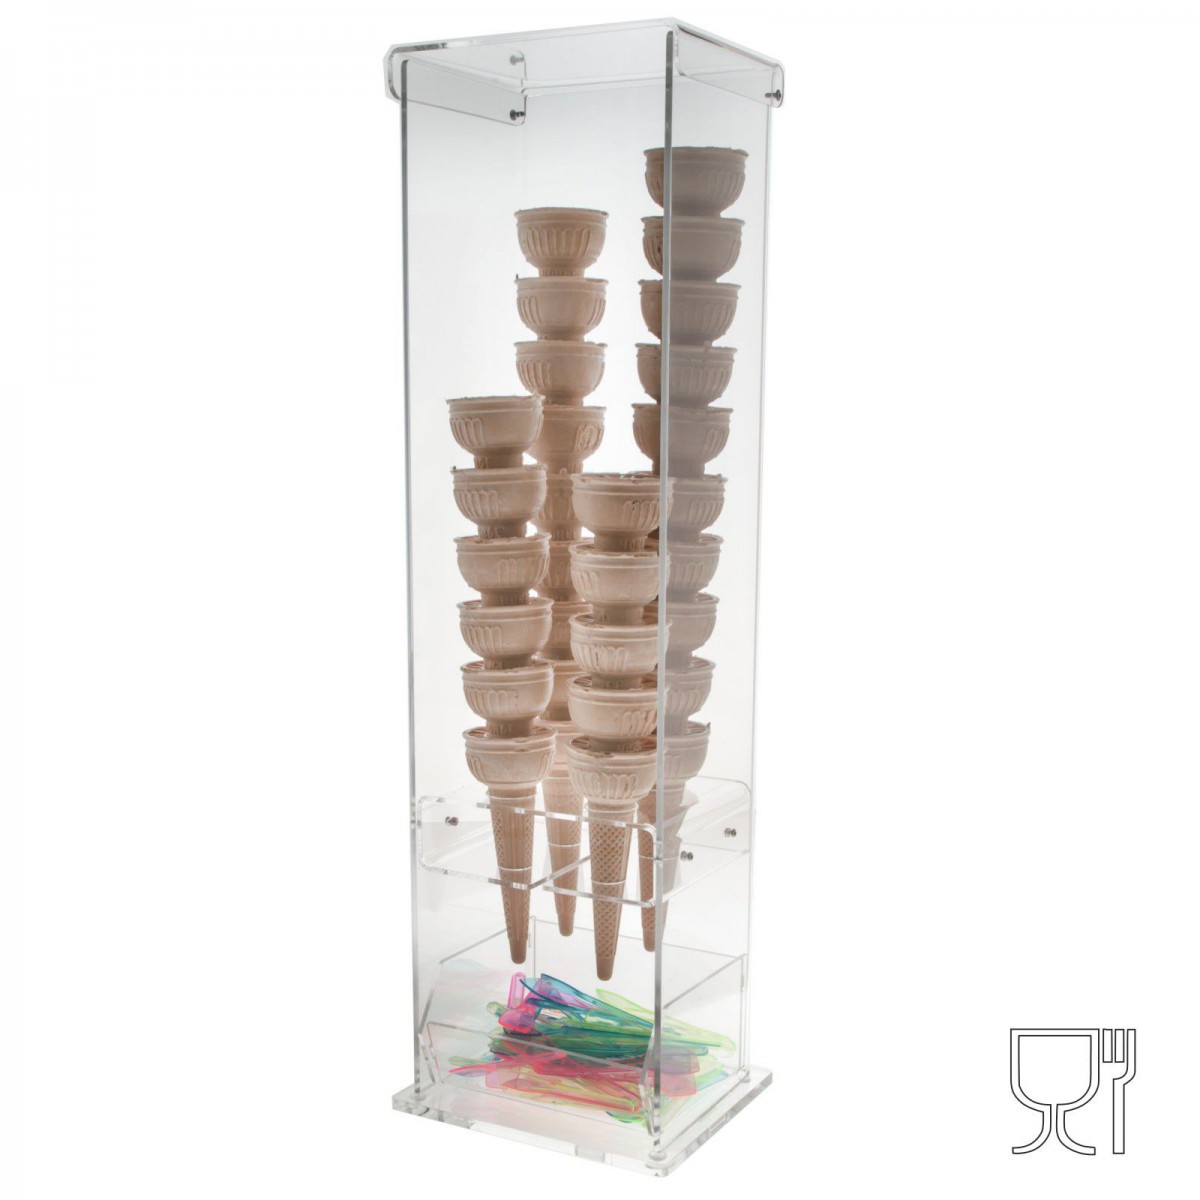 Présentoir cornets à glace plexi transparent et colorié avec porte-cuillères – 4 trous - Diamètre du